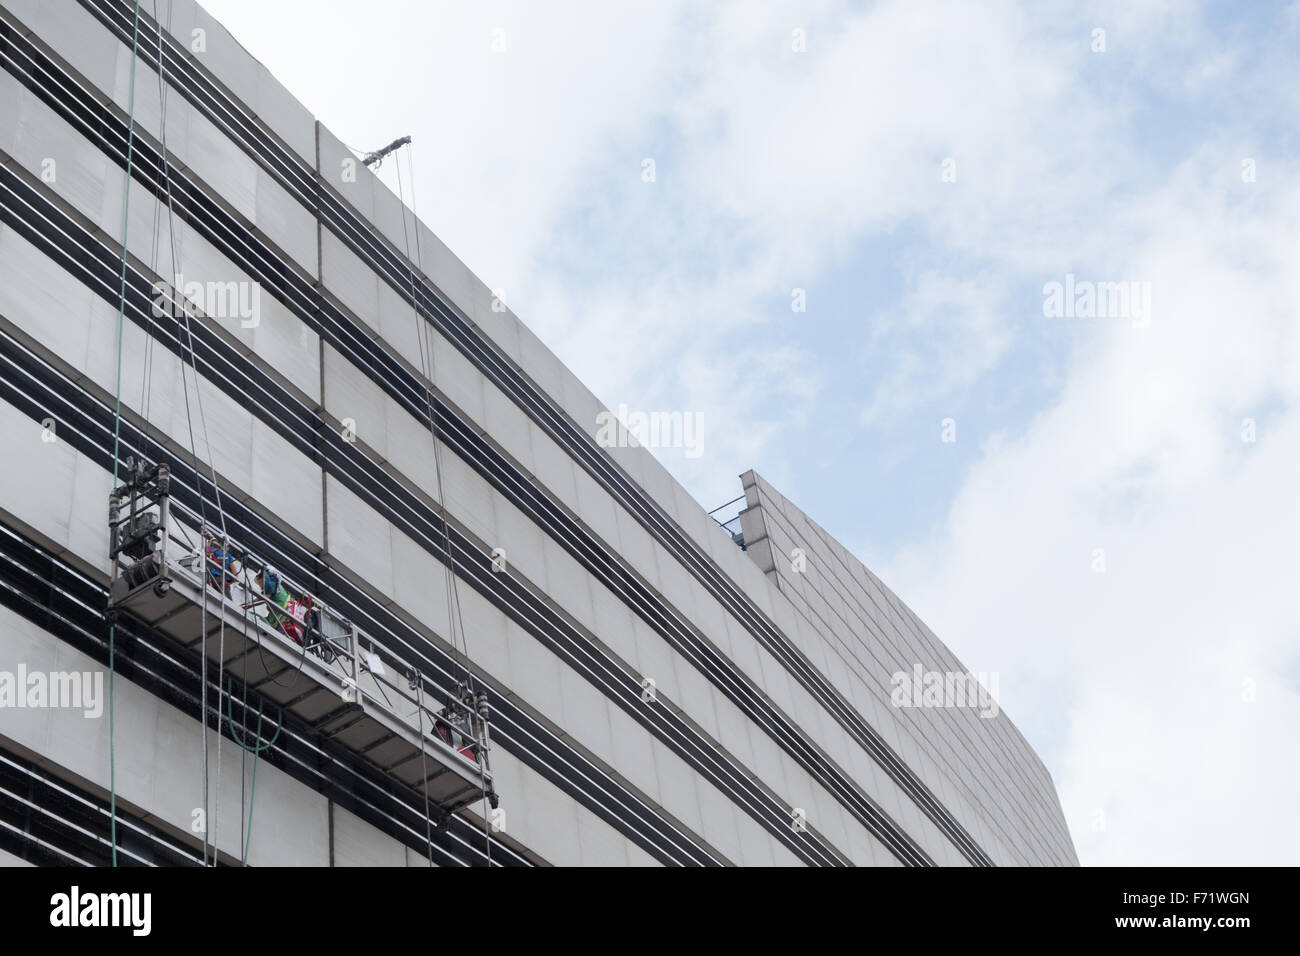 La plate-forme de nettoyage fenêtre suspendu hong kong Banque D'Images